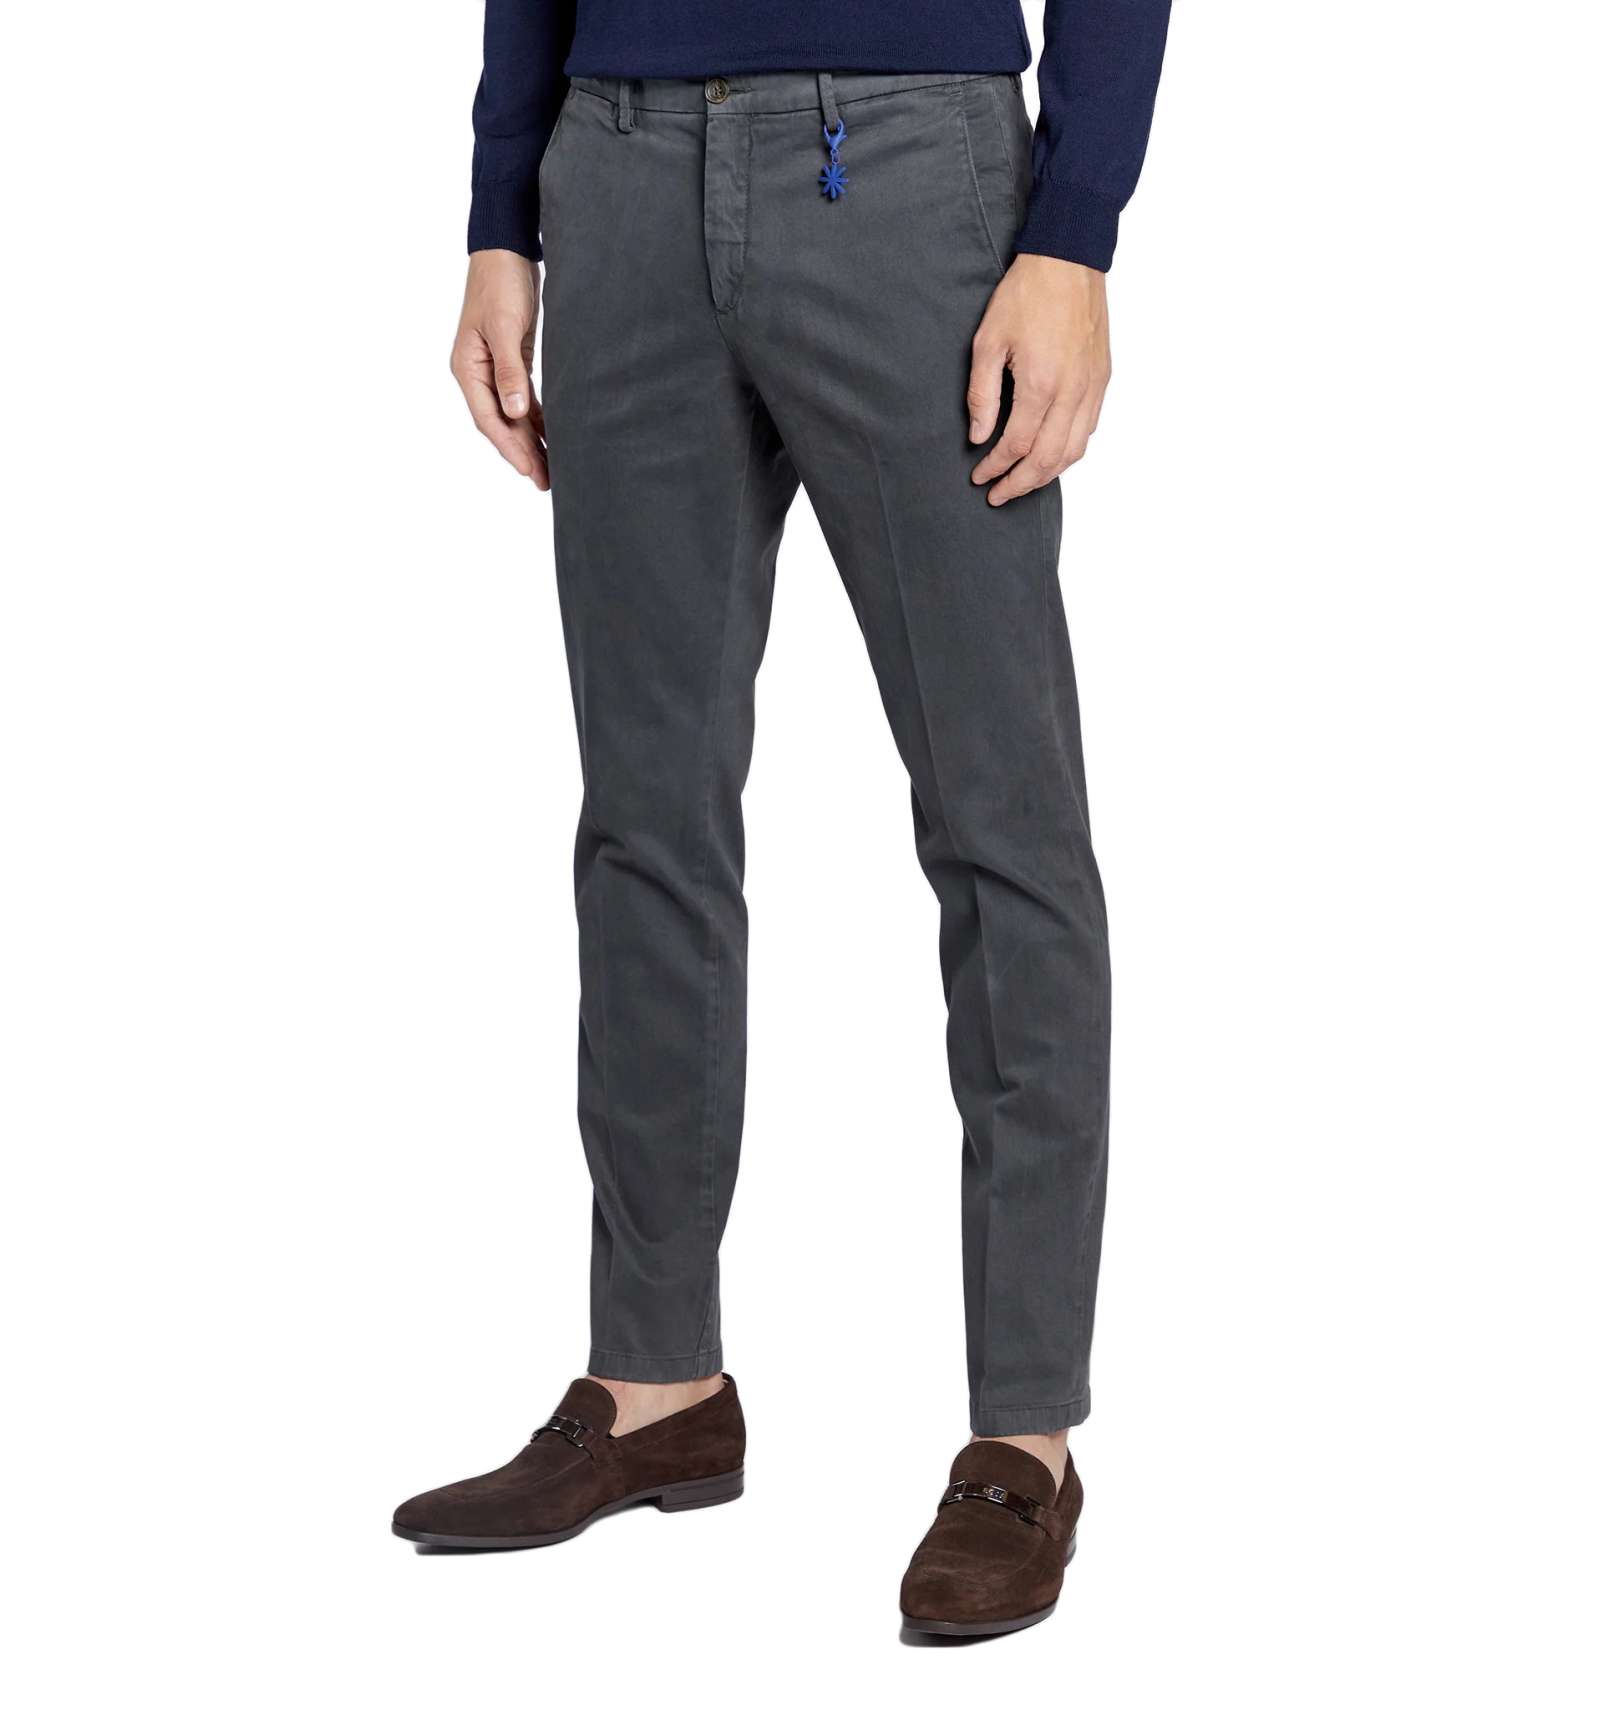 Pantaloni invernali in cotone elasticizzato - grigio - MANUEL RITZ